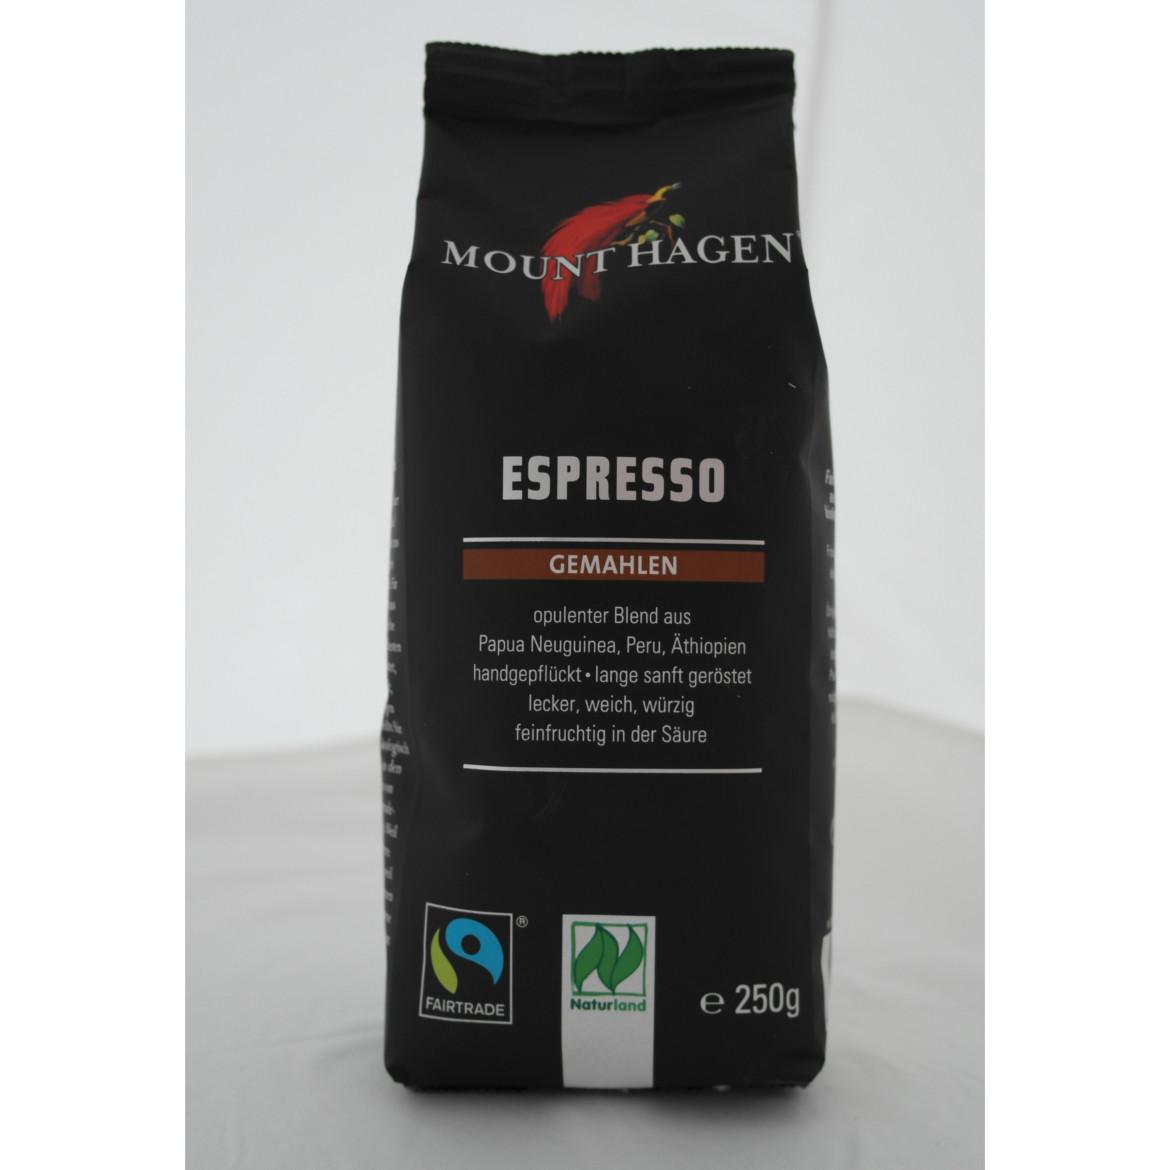 Fairtradekennzeichnung: MountHagen Espresso